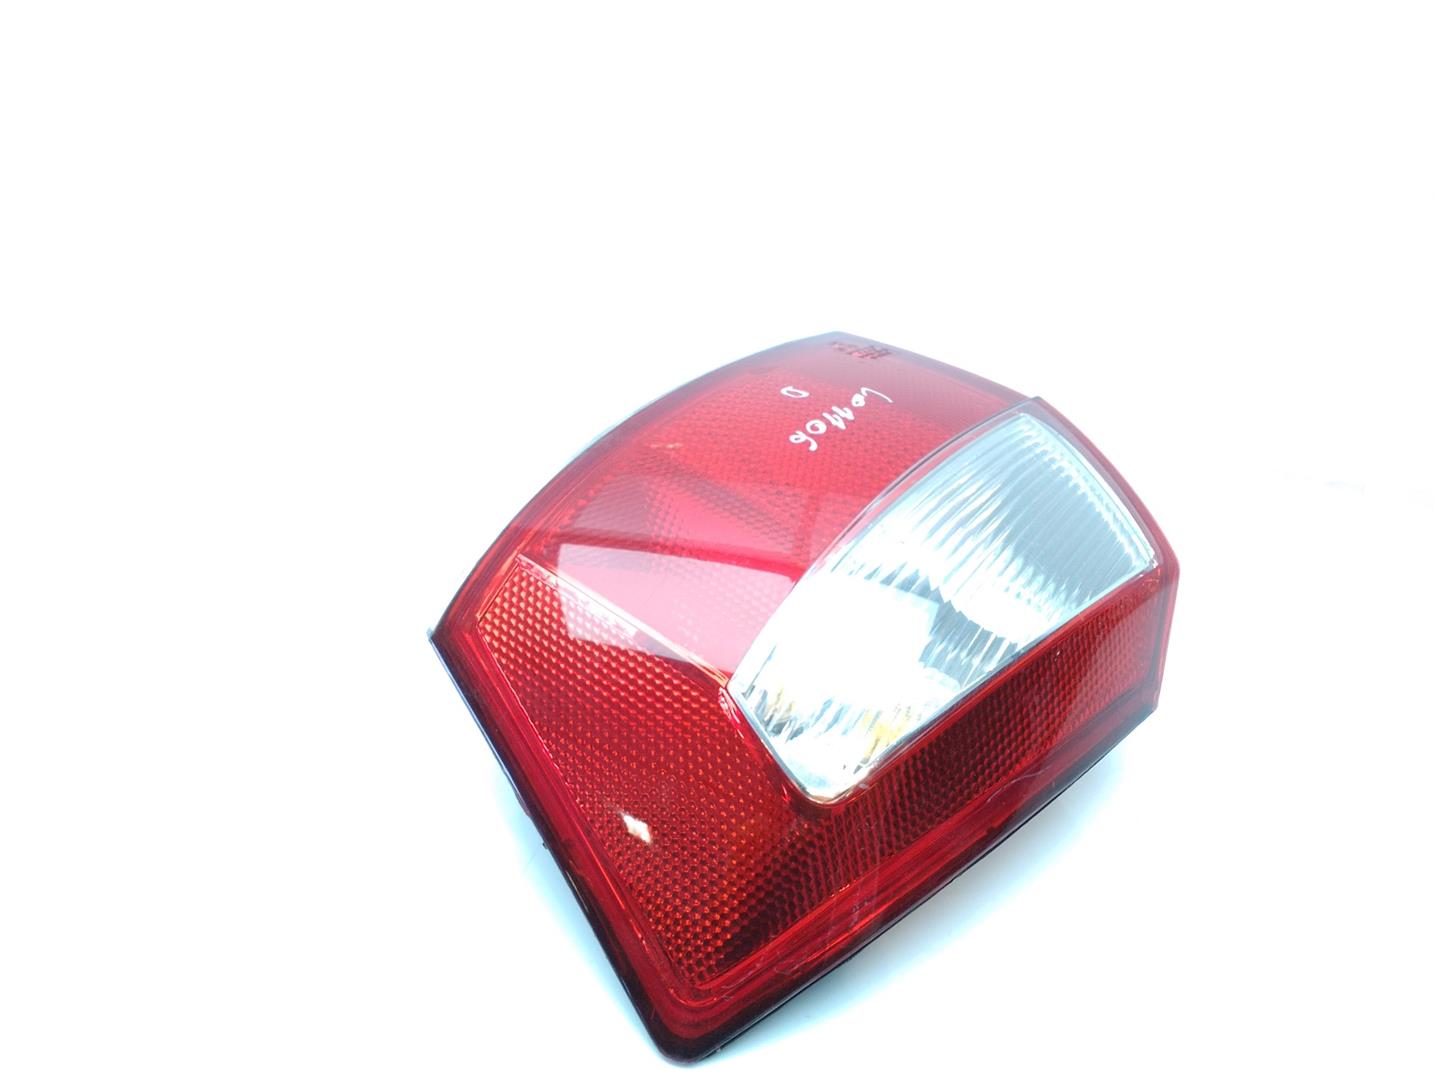 AUDI A4 B6/8E (2000-2005) Rear Right Taillight Lamp 8E5945218 18484240